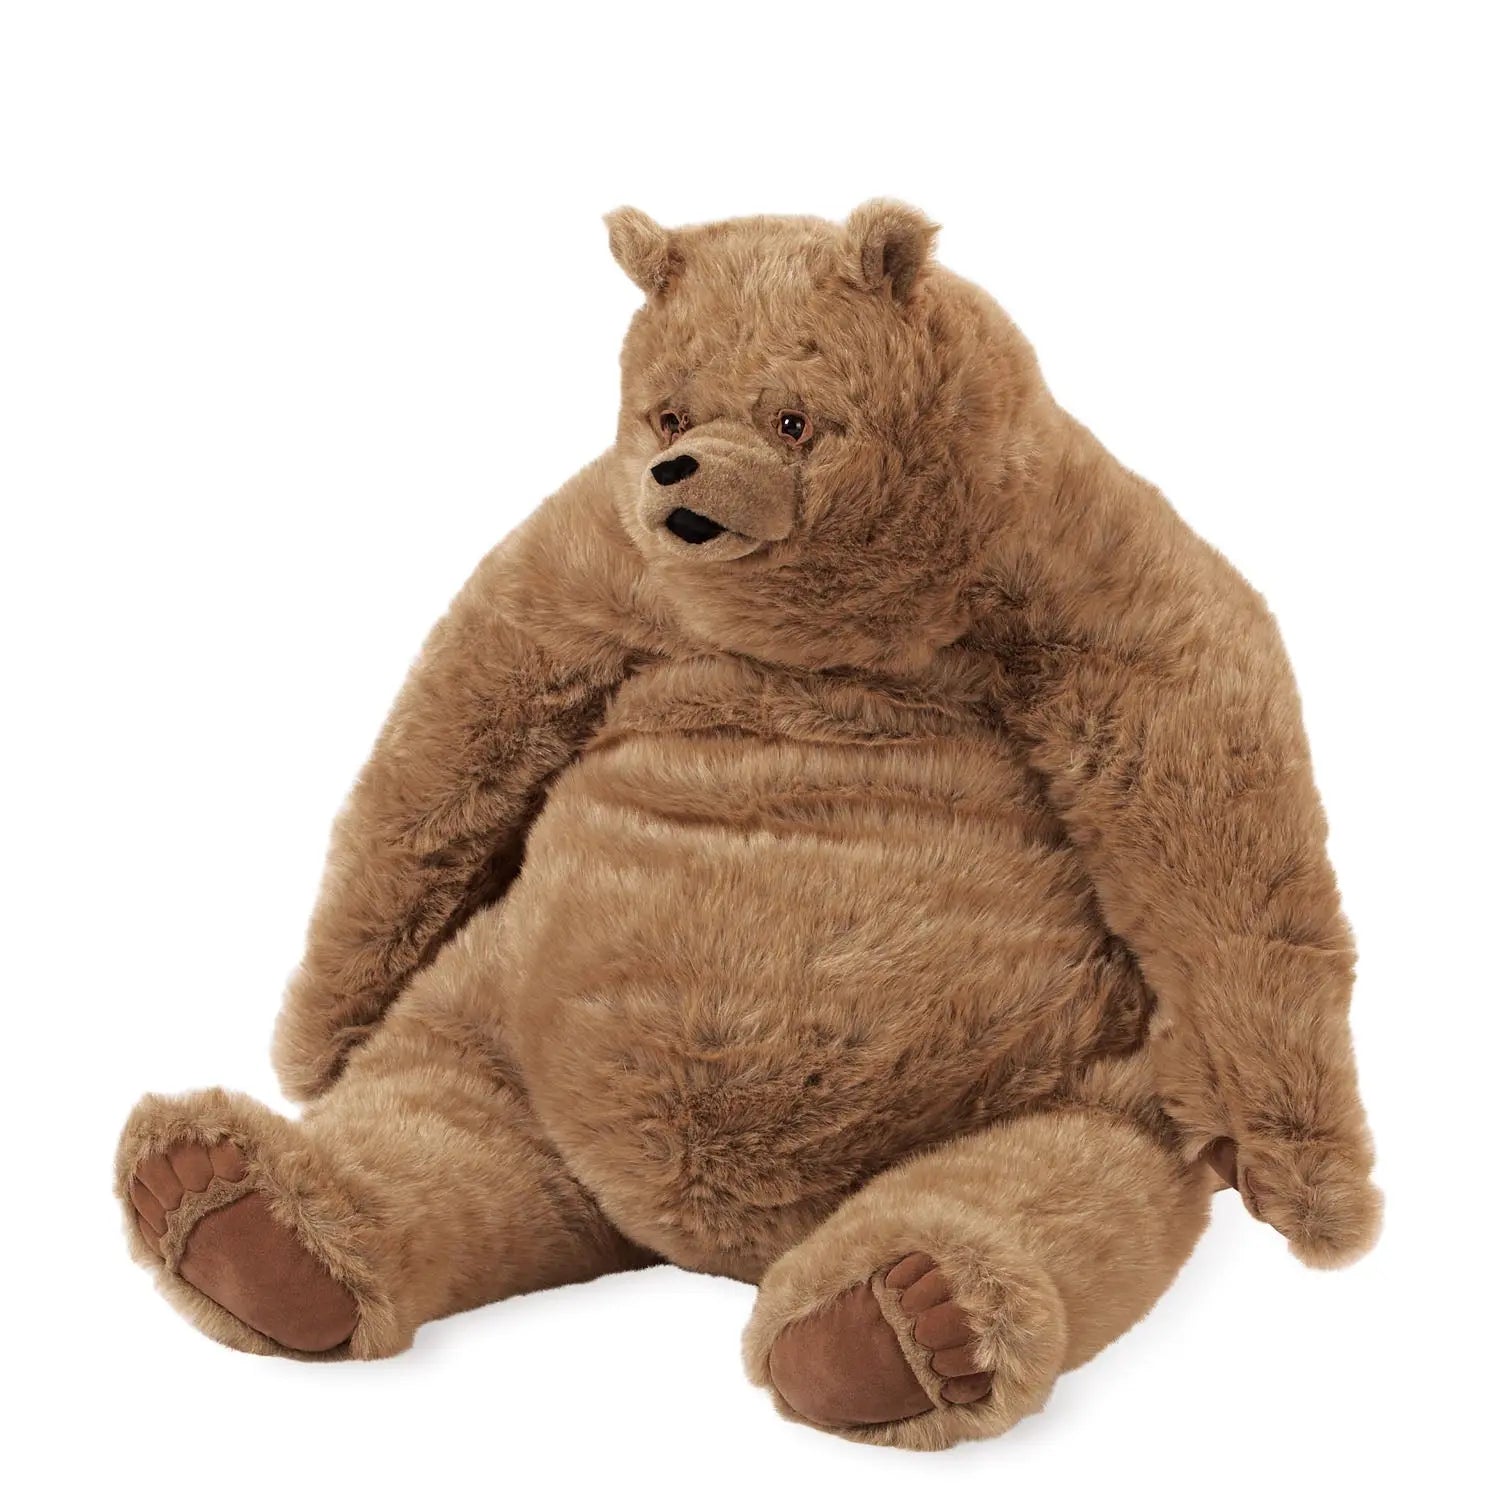 Giant Teddy Bear Harry, Large Teddy Bears